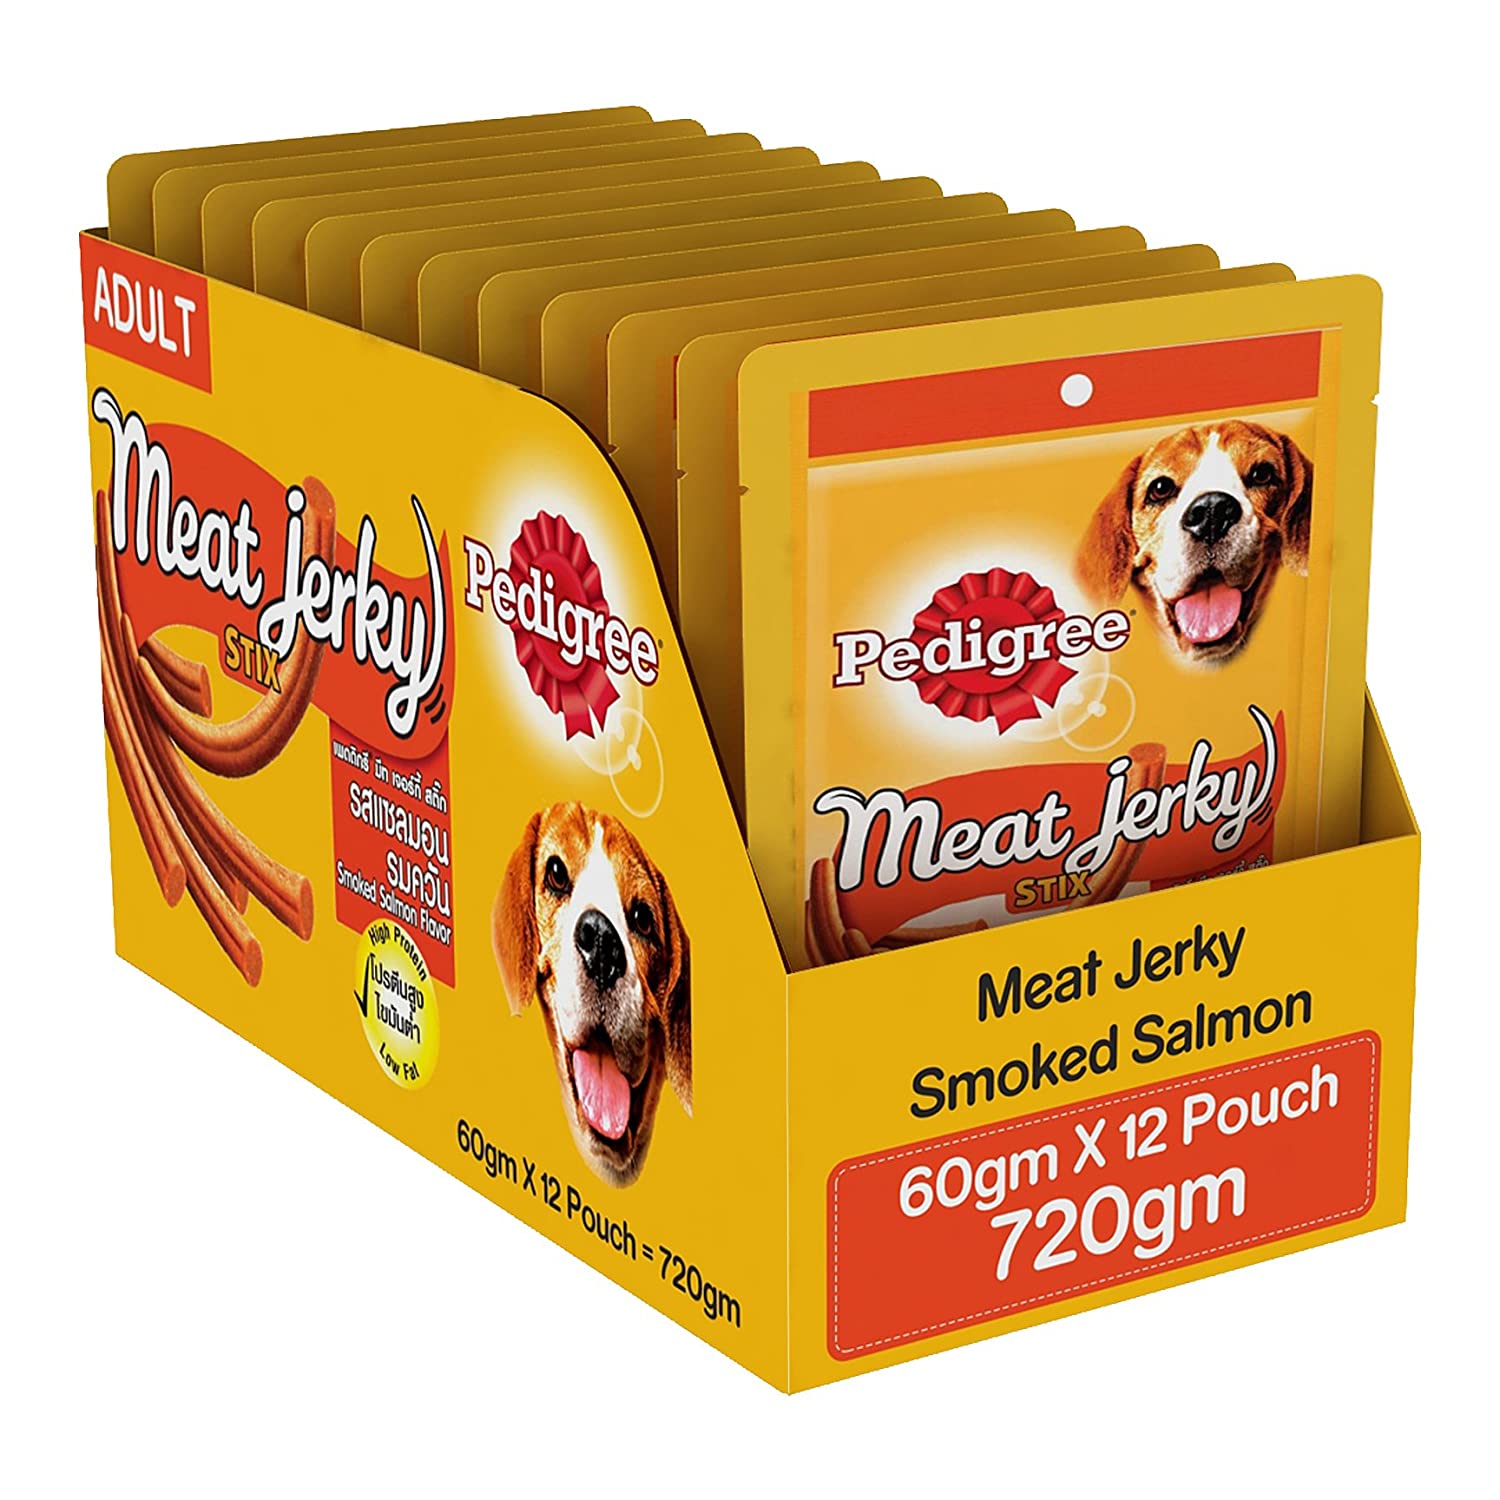 Pedigree Meat Jerky Adult Dog Treat, Smoked Salmon stick, 12 Packs (12 x 60g)